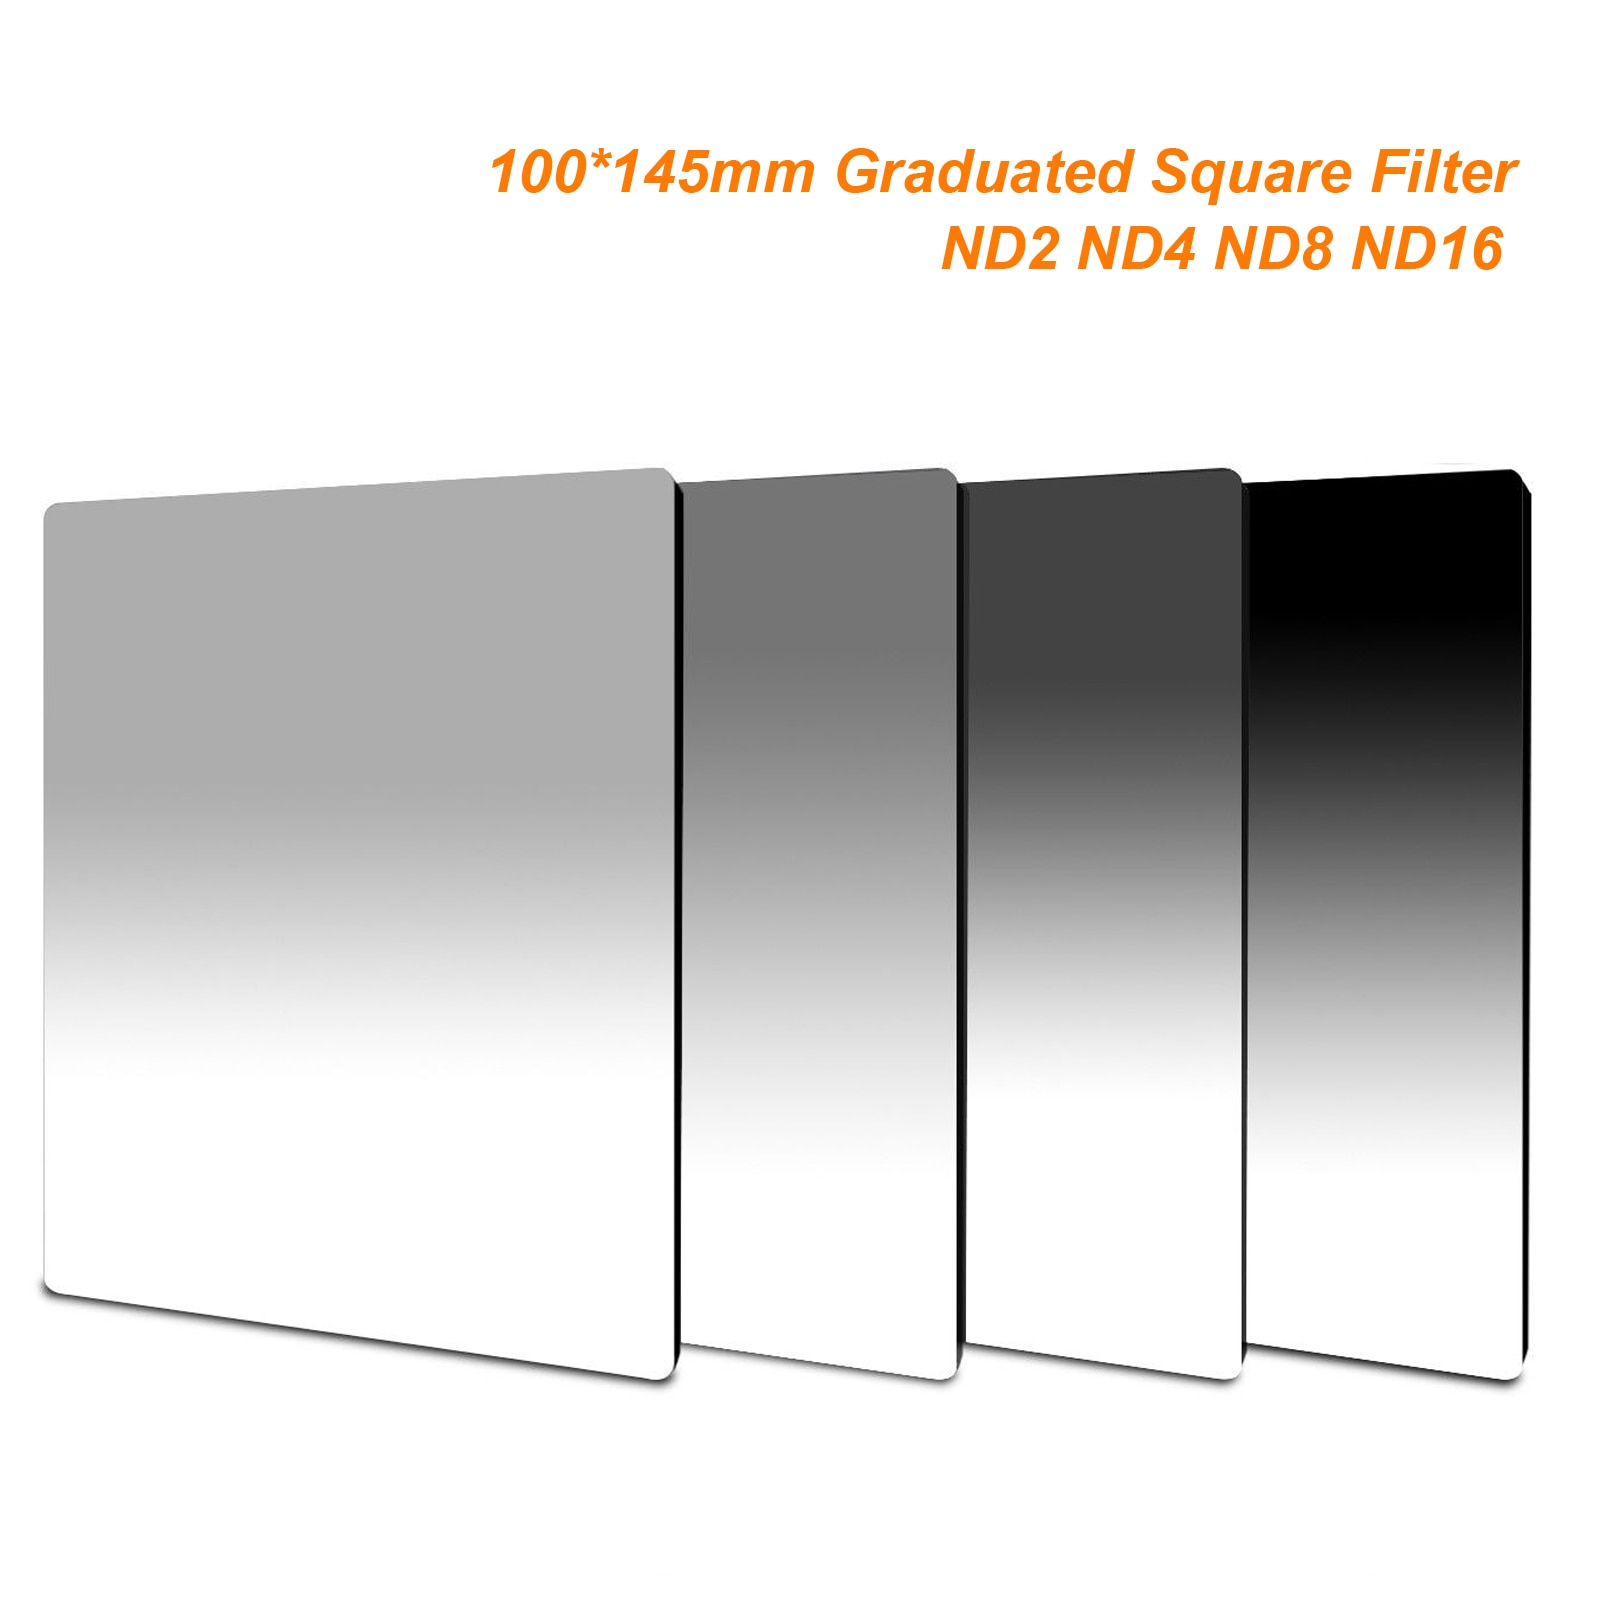 100mm x 145mm Afgestudeerd ND2 ND4 ND8 ND16 Neutrale Dichtheid 100*145mm Afgestudeerd Vierkante Filter voor lee Cokin Z serie